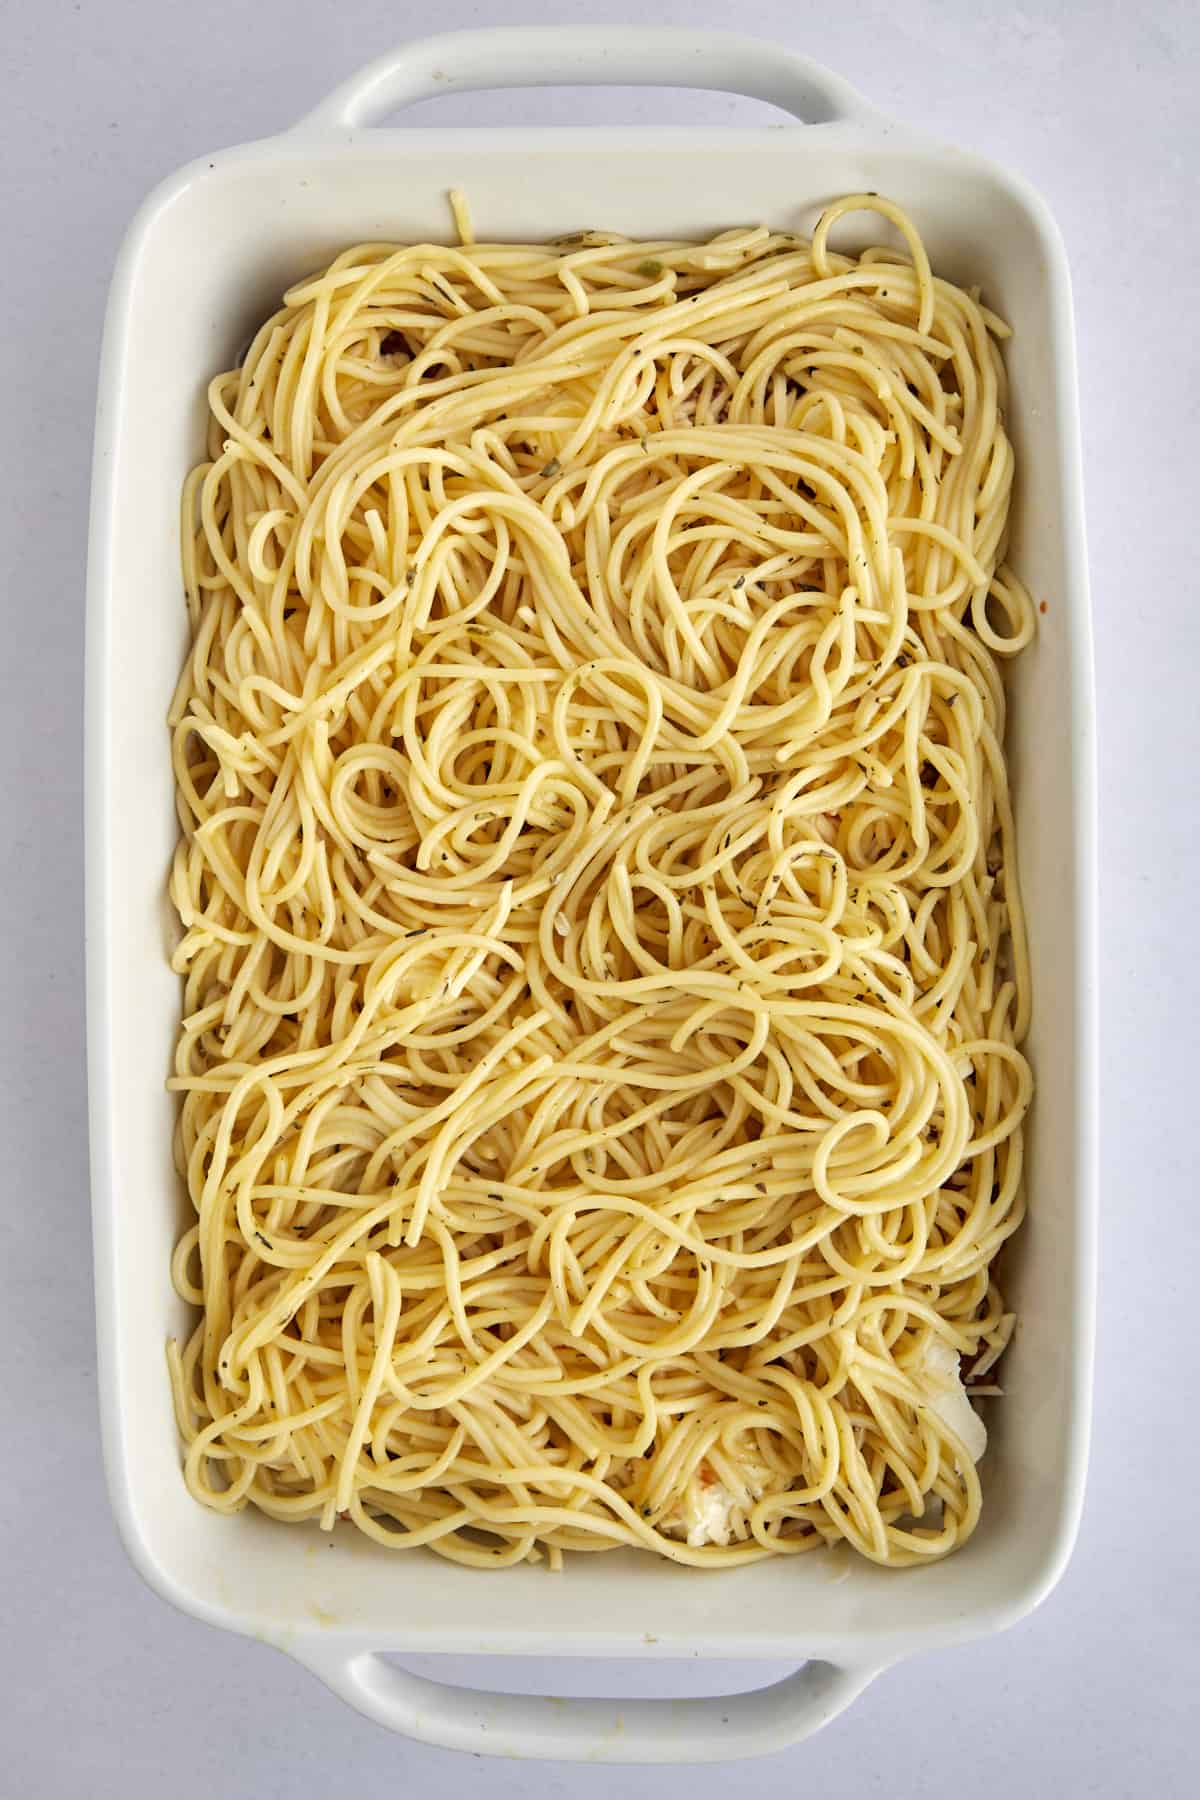 spaghetti noodles in a casserole dish.